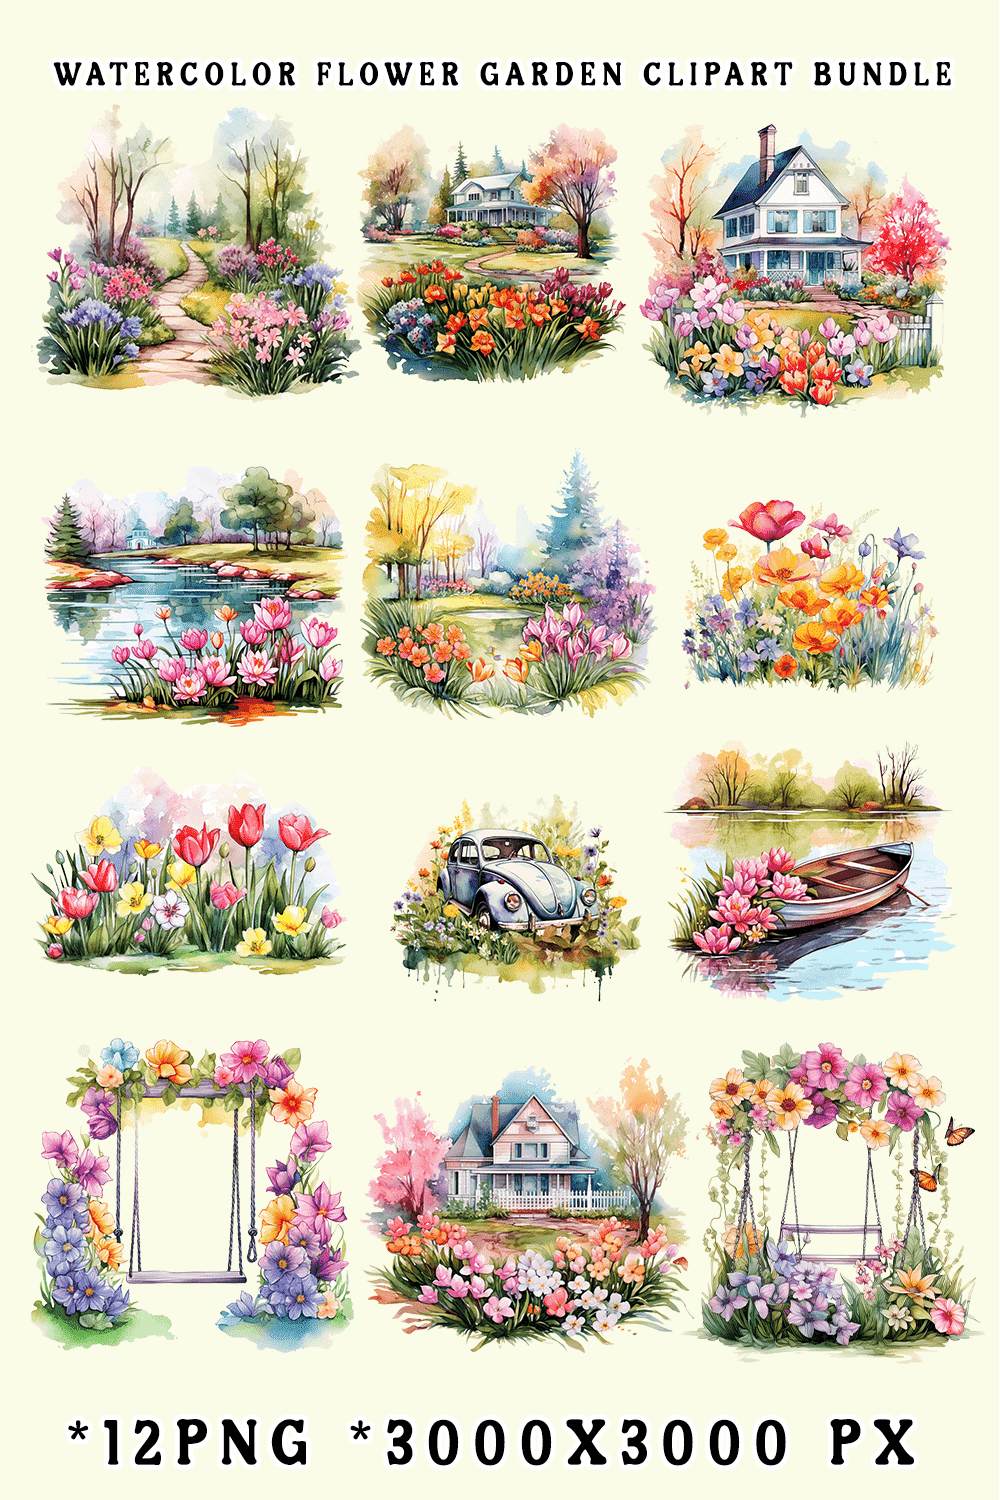 Watercolor Flower Garden Clipart Bundle pinterest preview image.